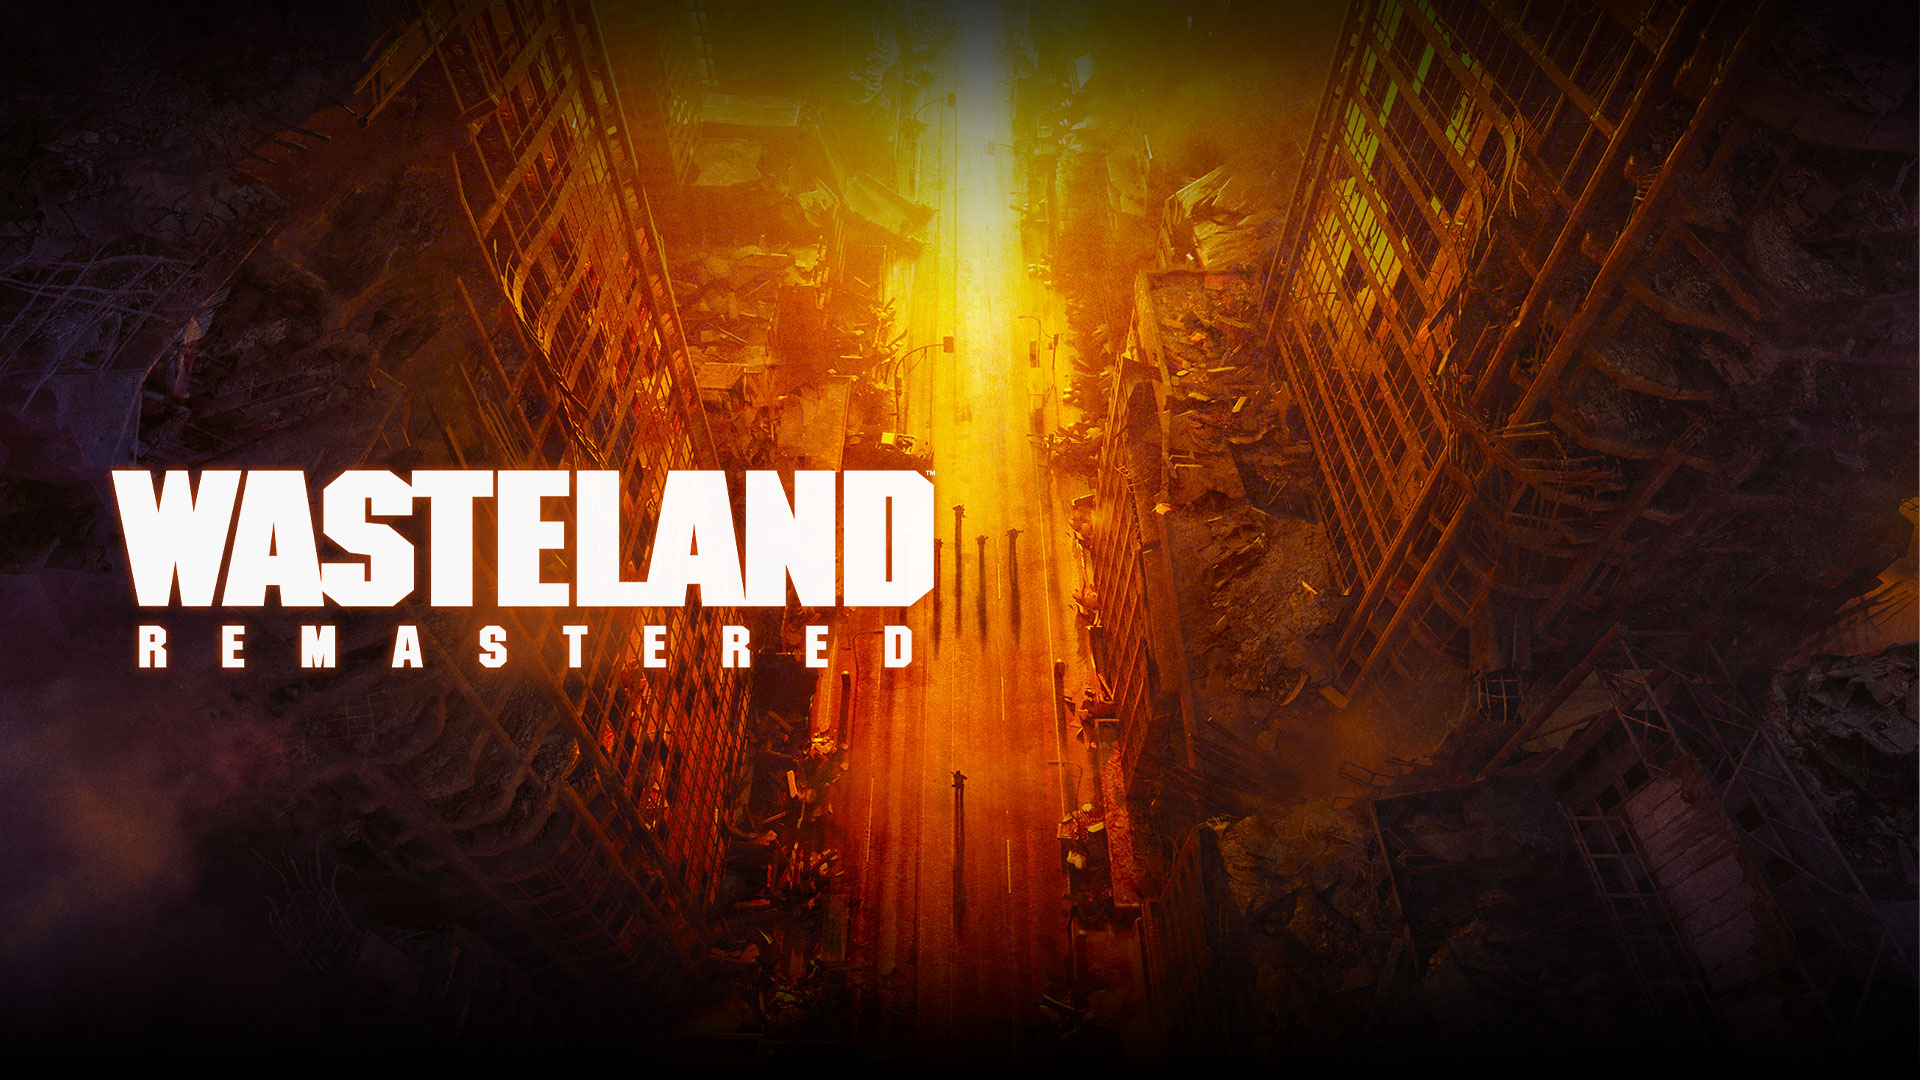 Wasteland Remastered, вид сверху на разрушенные здания и людей на улице в желтых, оранжевых и красных тонах